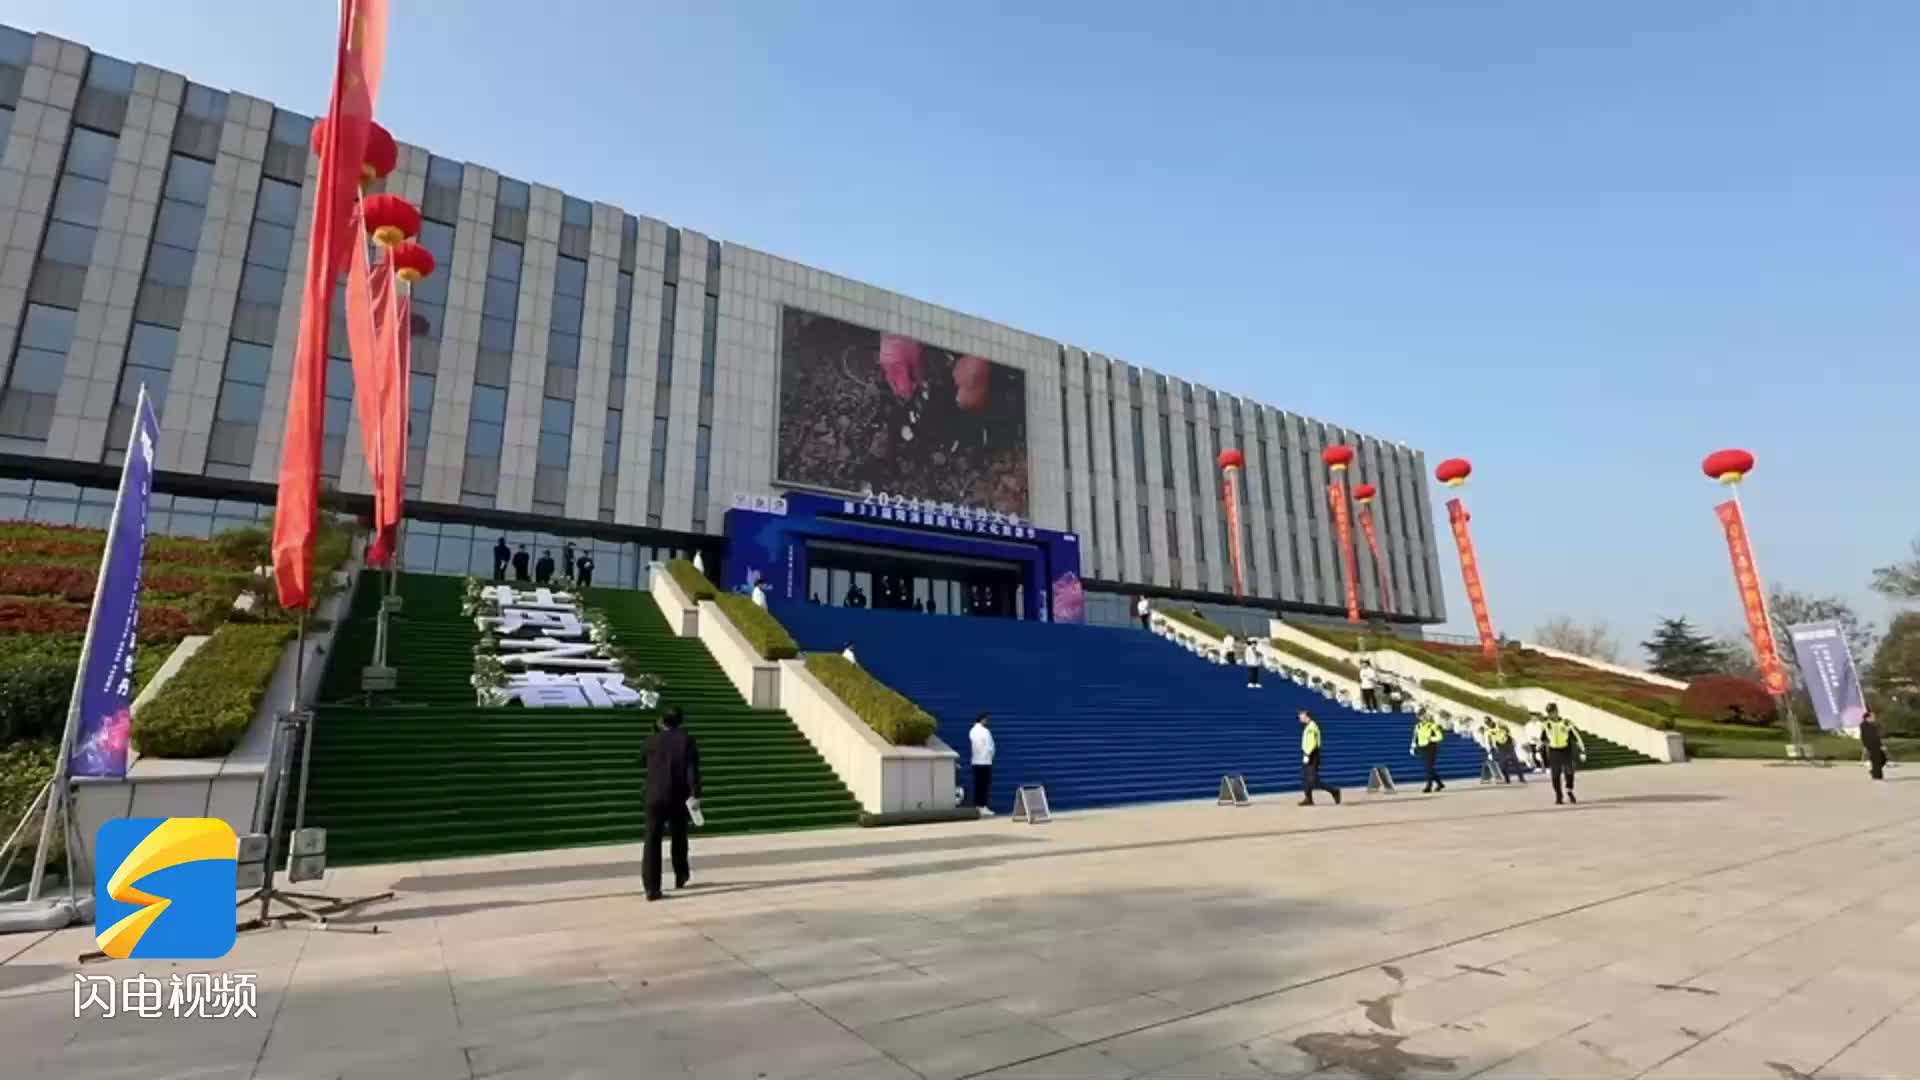 “紫禁城与凡尔赛宫”展览亮相北京故宫博物院  一场双向奔赴的文明对话